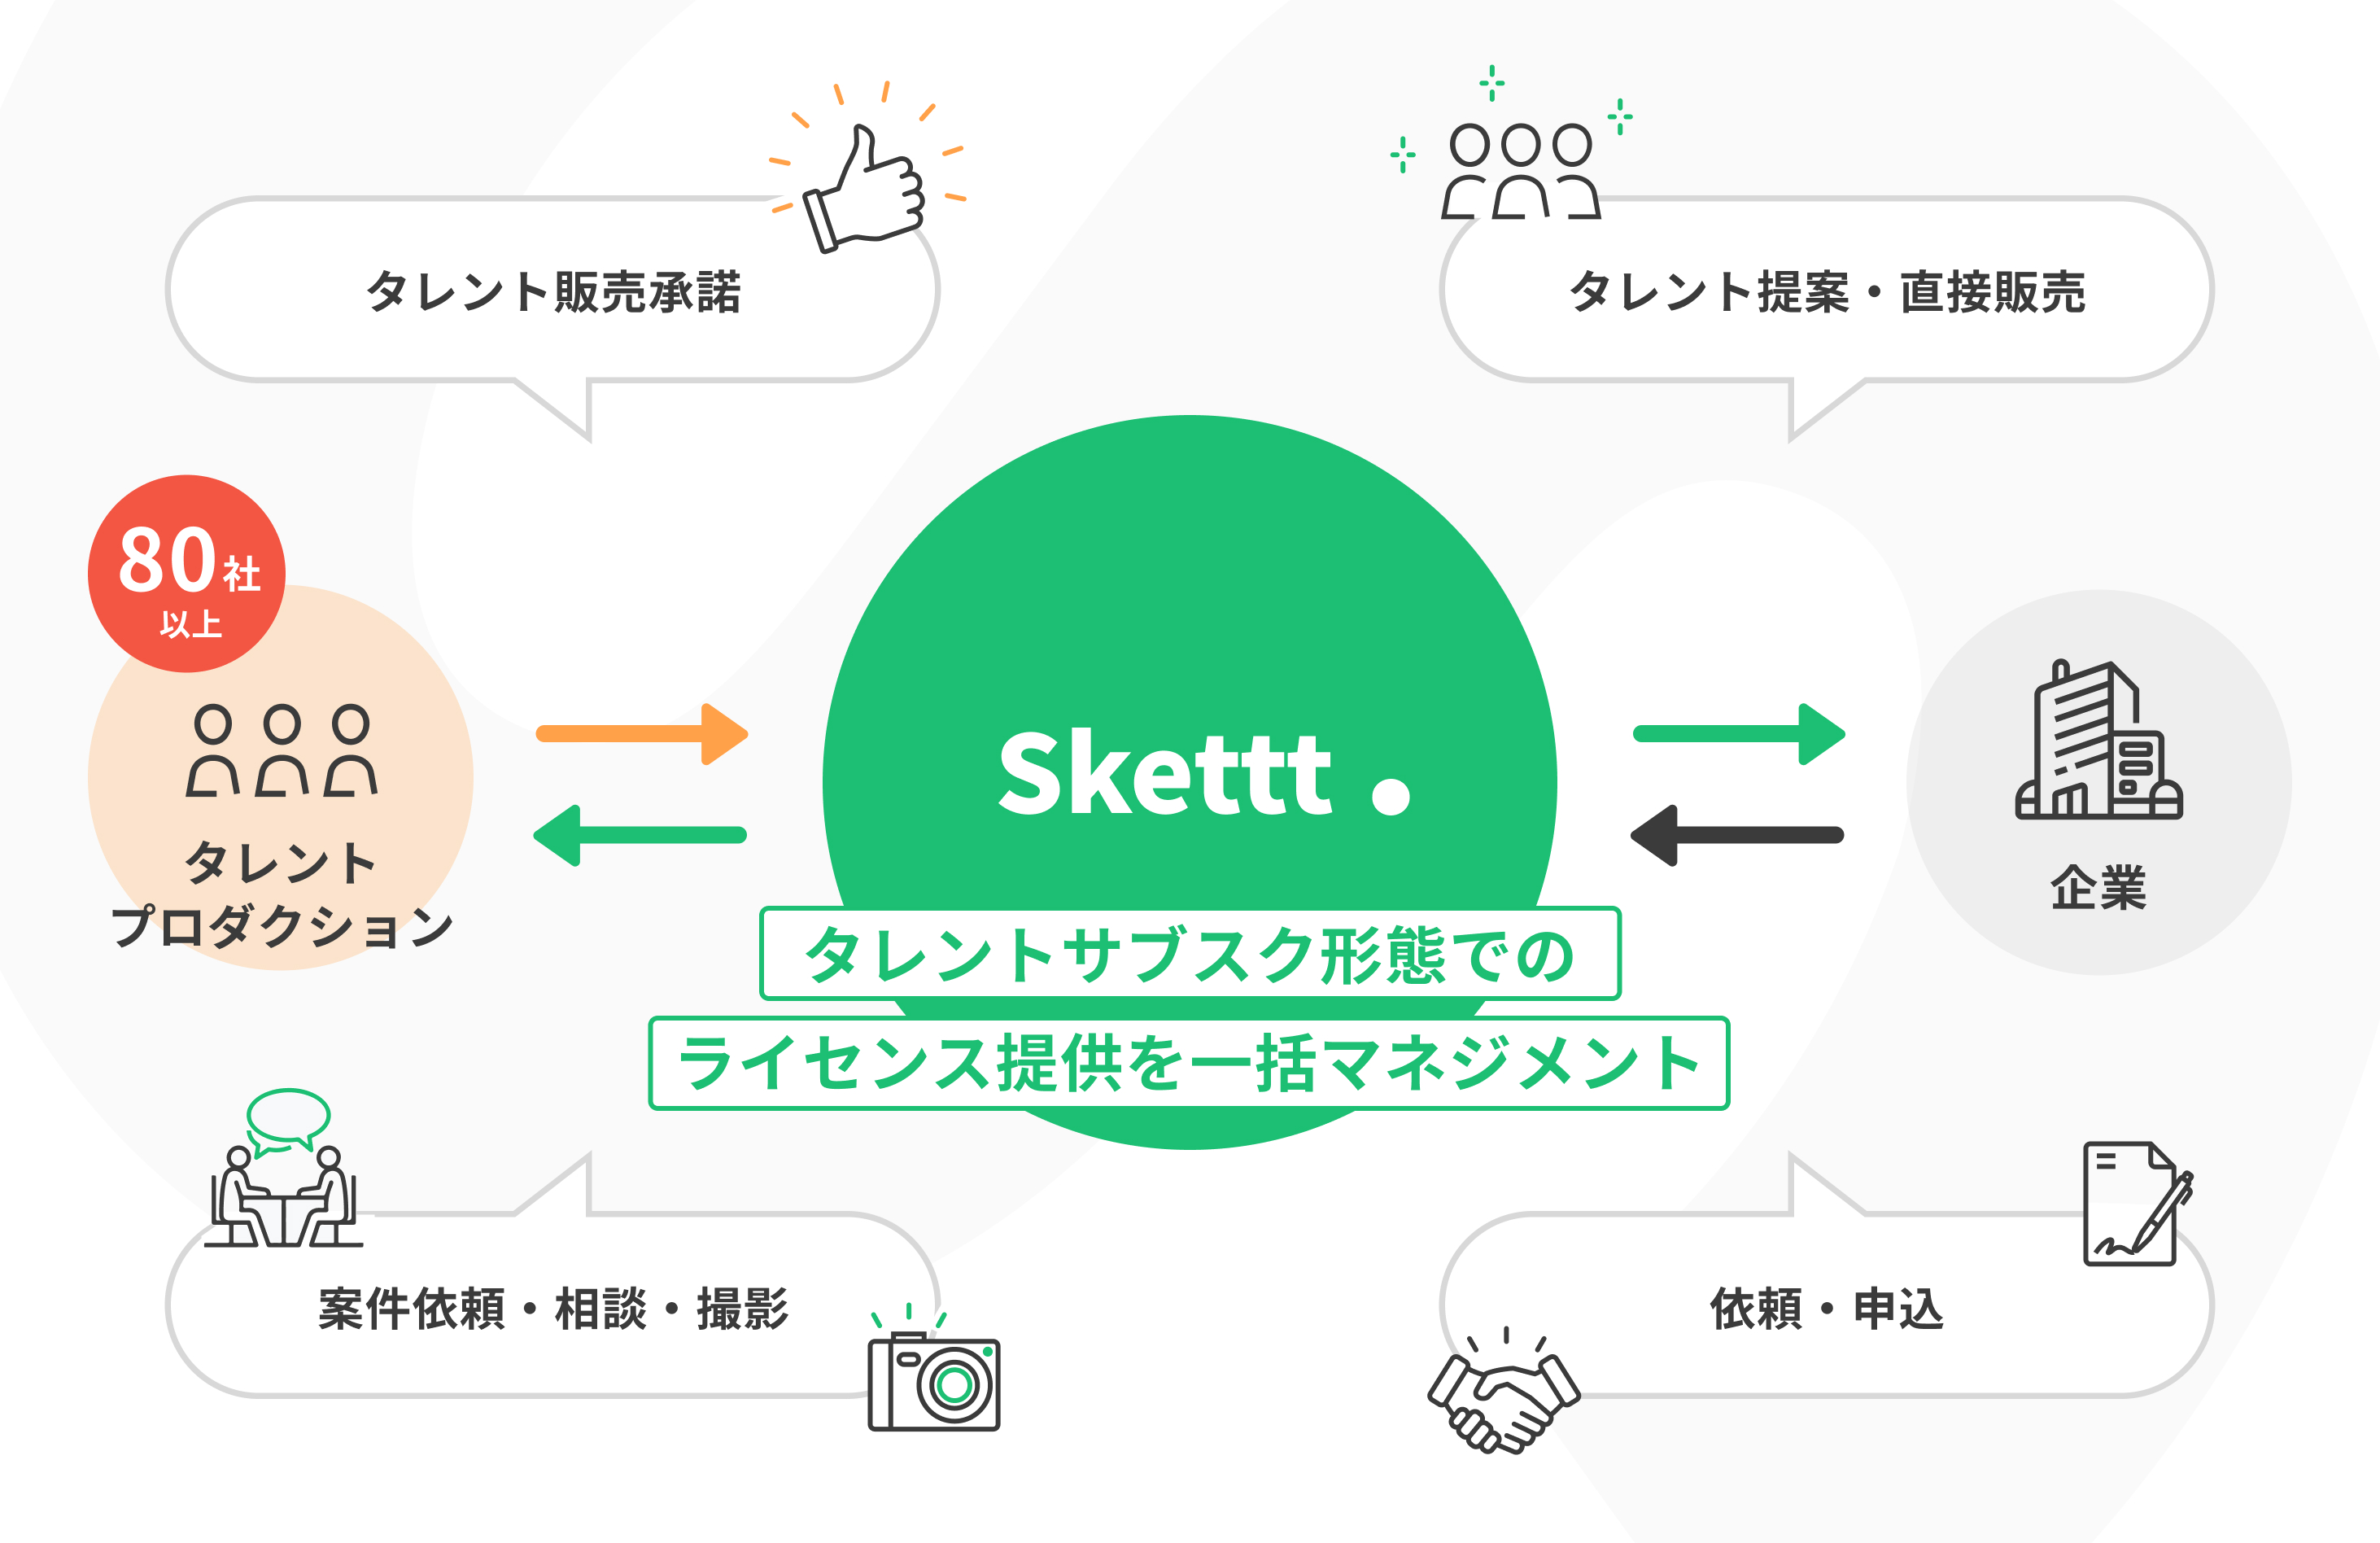 橋本じゅんさん（enchante所属）の宣伝素材が使い放題に！IPマーケティング包括支援サービス「Skettt（スケット）」に参加し、地方・中小企業のマーケティングを支援のサブ画像3_「Skettt」の仕組み